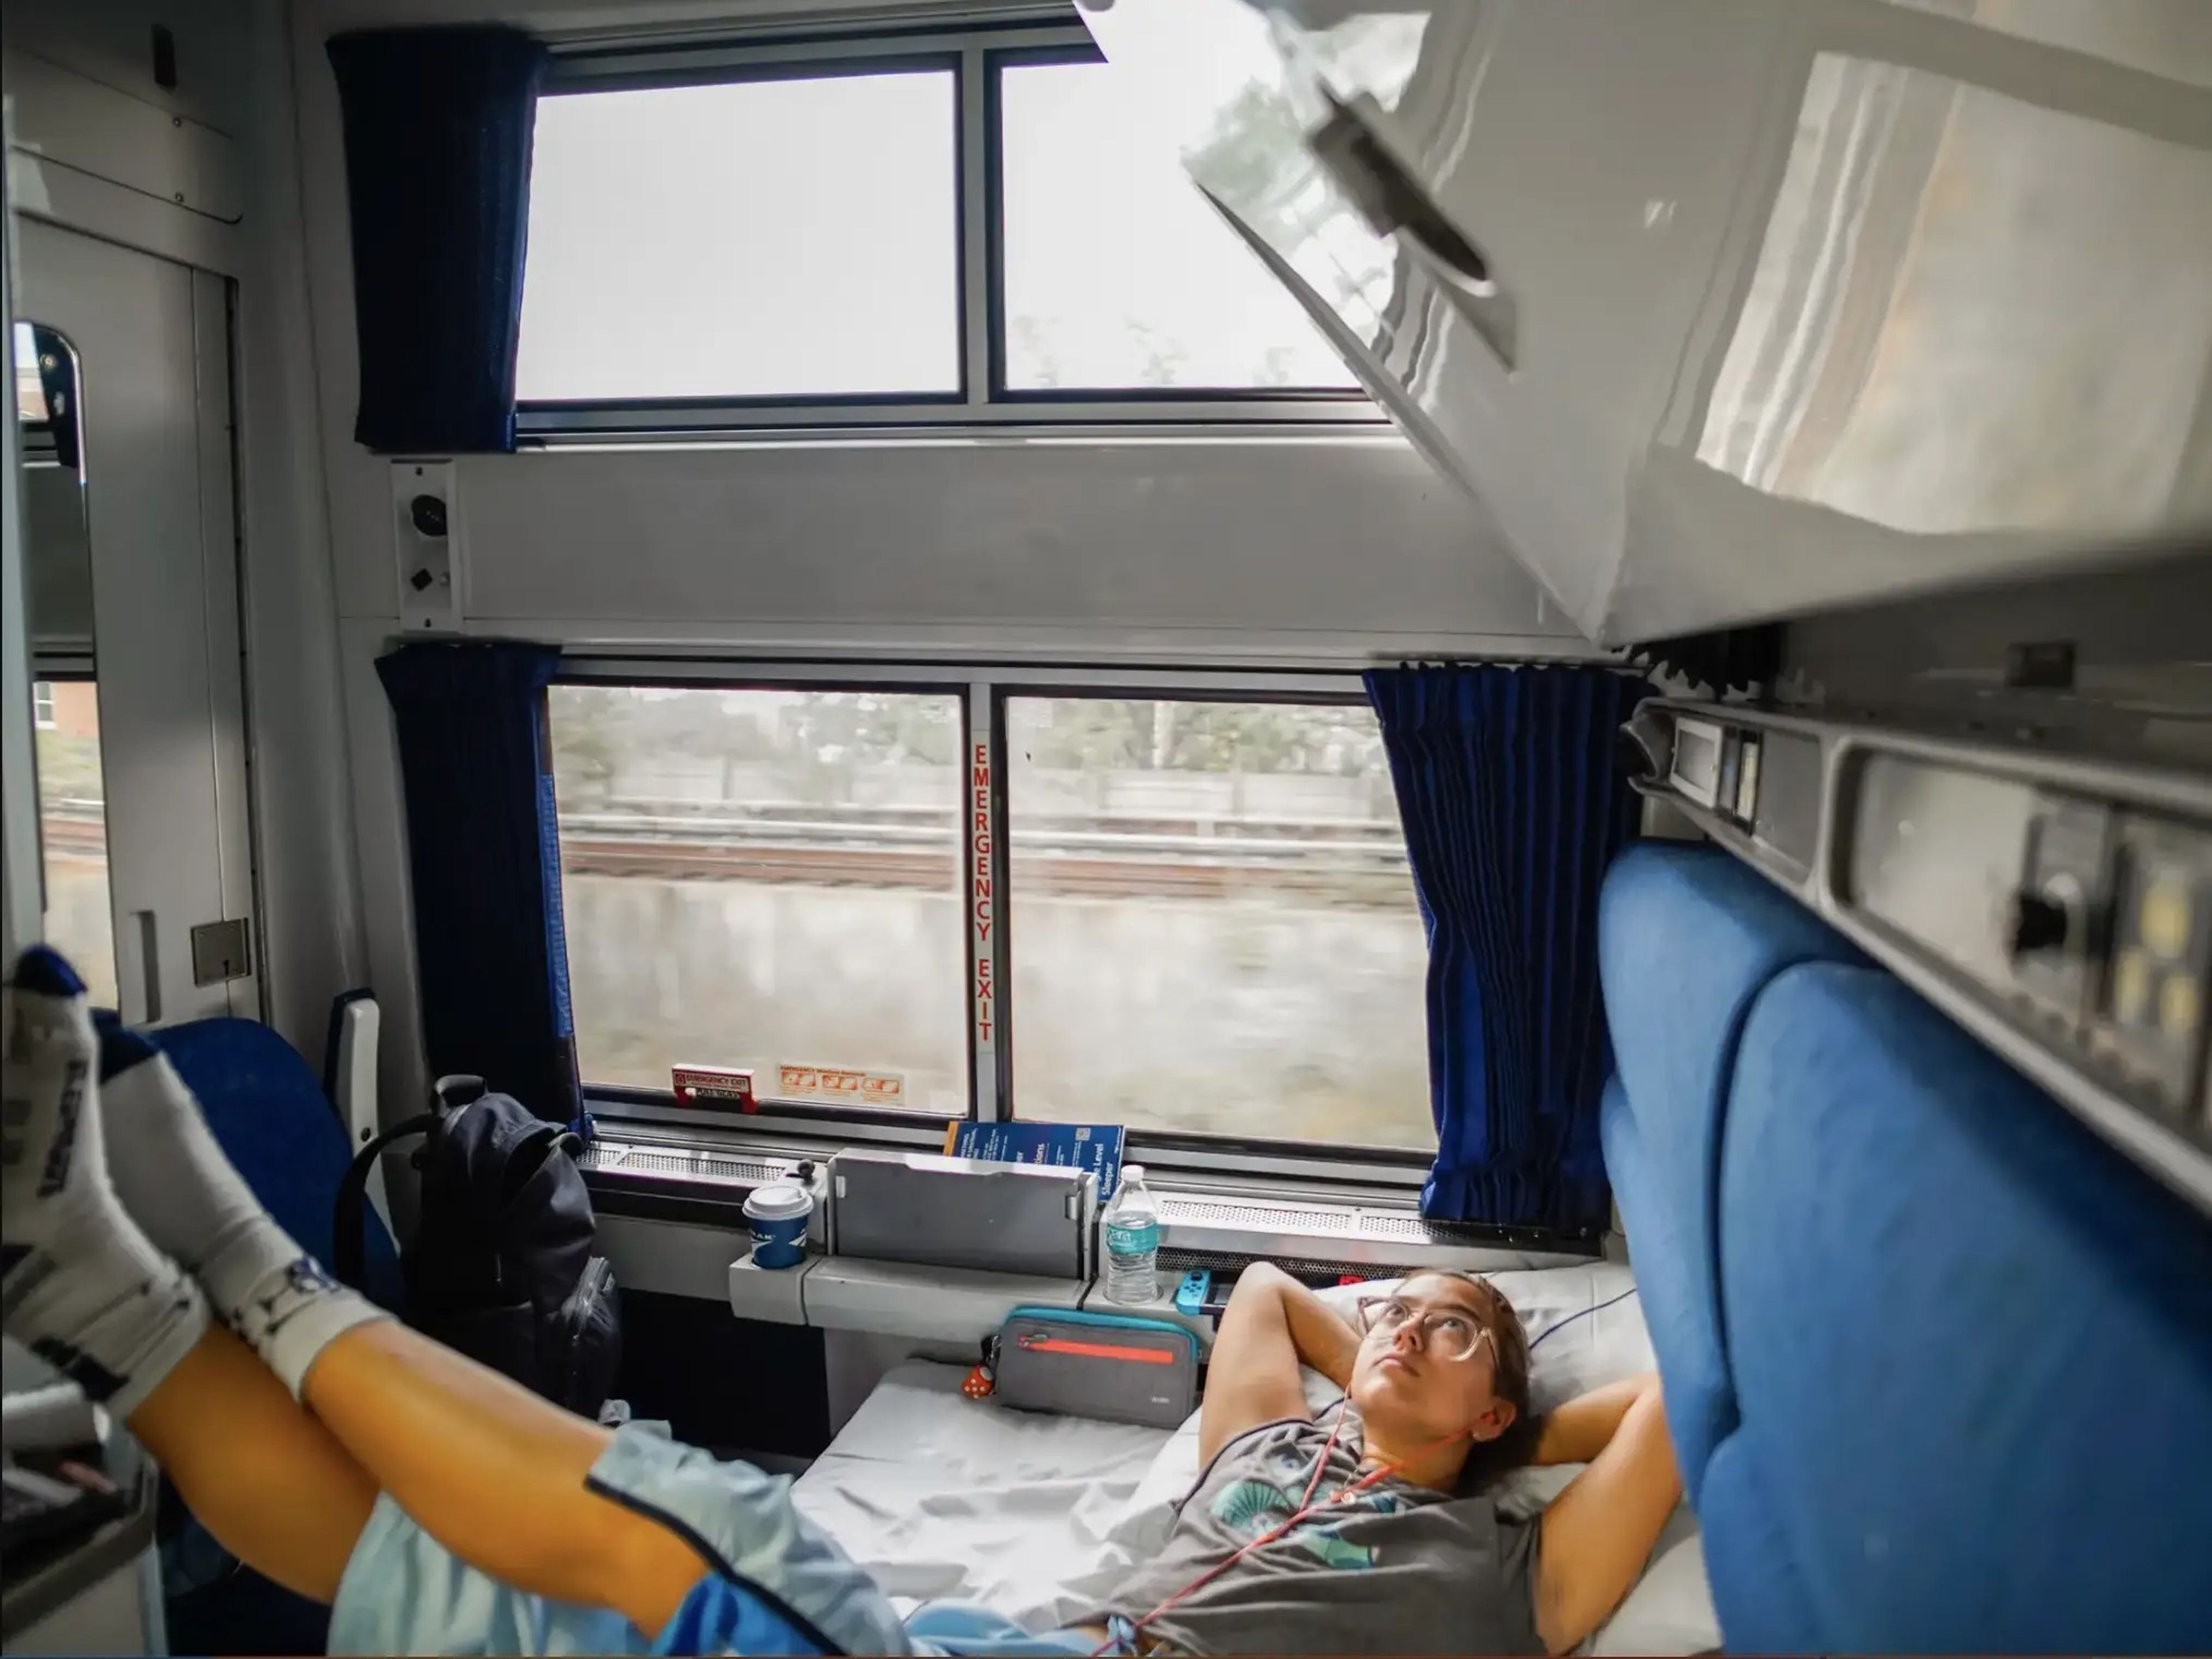 La autora se relaja en una habitación de Amtrak viajando de Miami a Nueva York.